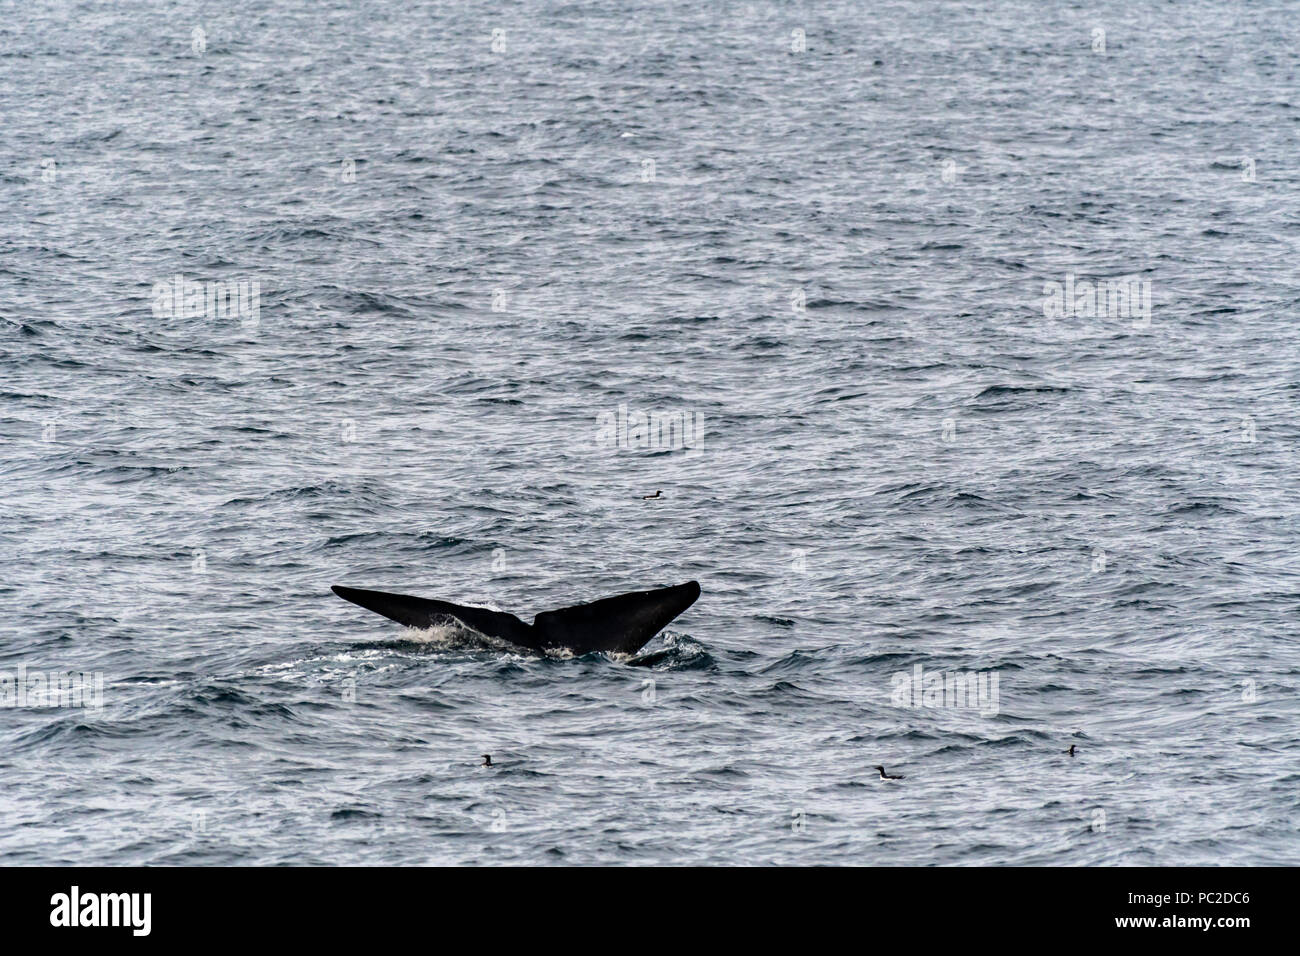 La ballena azul (Balaenoptera musculus) nadando cerca de la costa de Svalbard, Noruega. Foto de stock